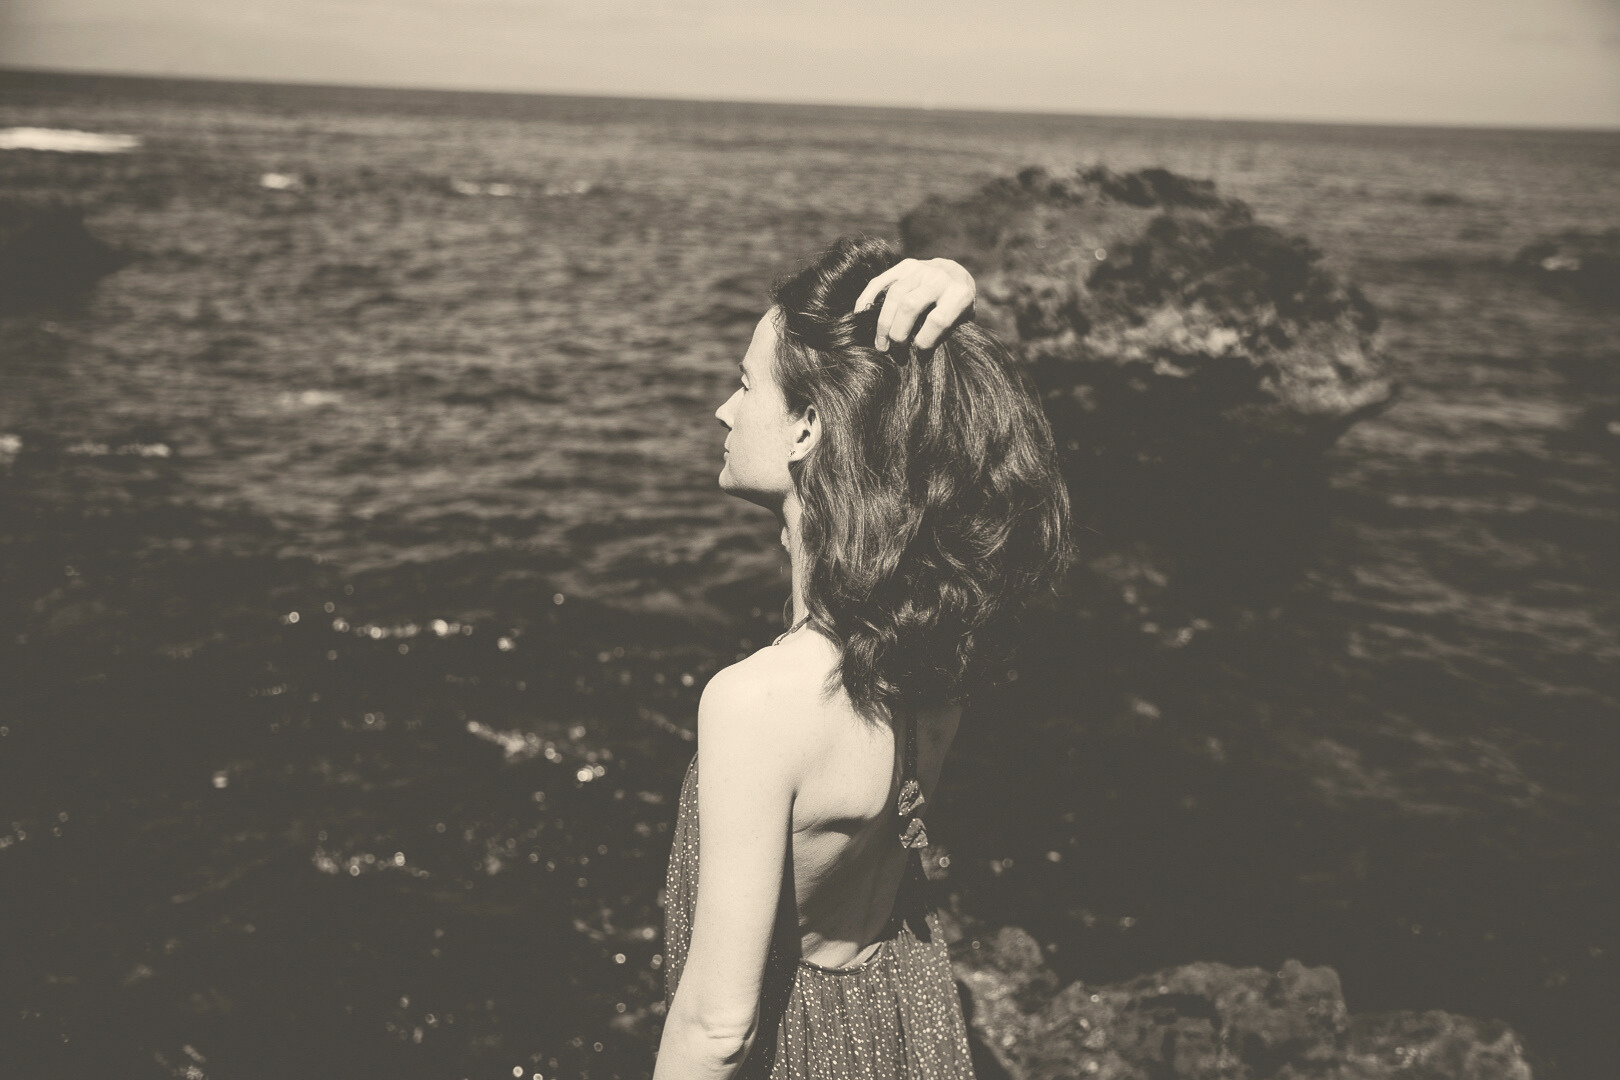 Schwarz weiß Bild mit leichtem Braunton aufbereitet. Eine Frau blickt aufs Meer, man sieht sie von der Seite. Sie hat eine Hand am hinteren Kopf und wirkt nachdenklich